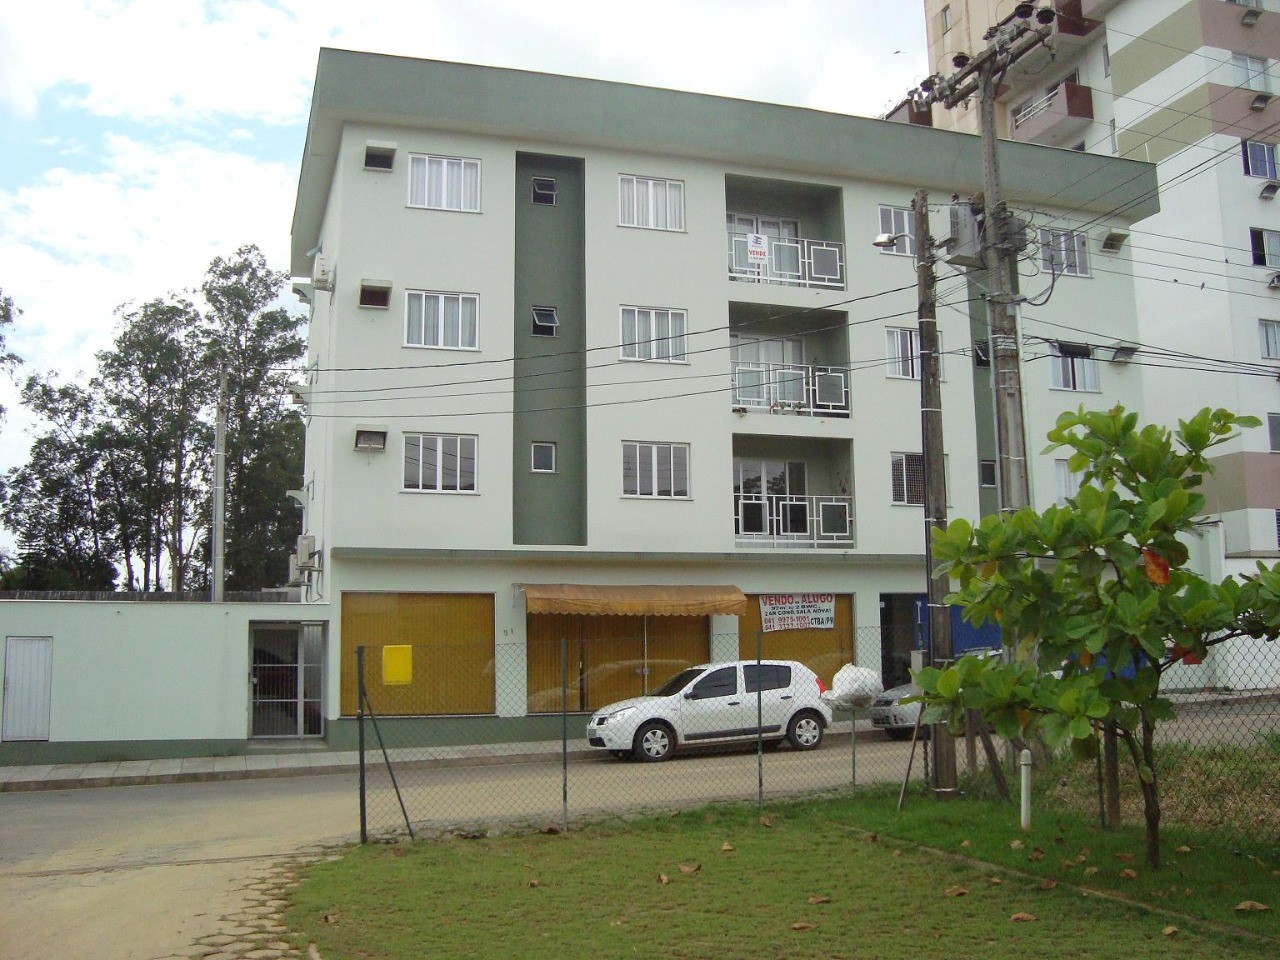 A0350 – Apartamento com dois quartos no Bairro Vila Nova.